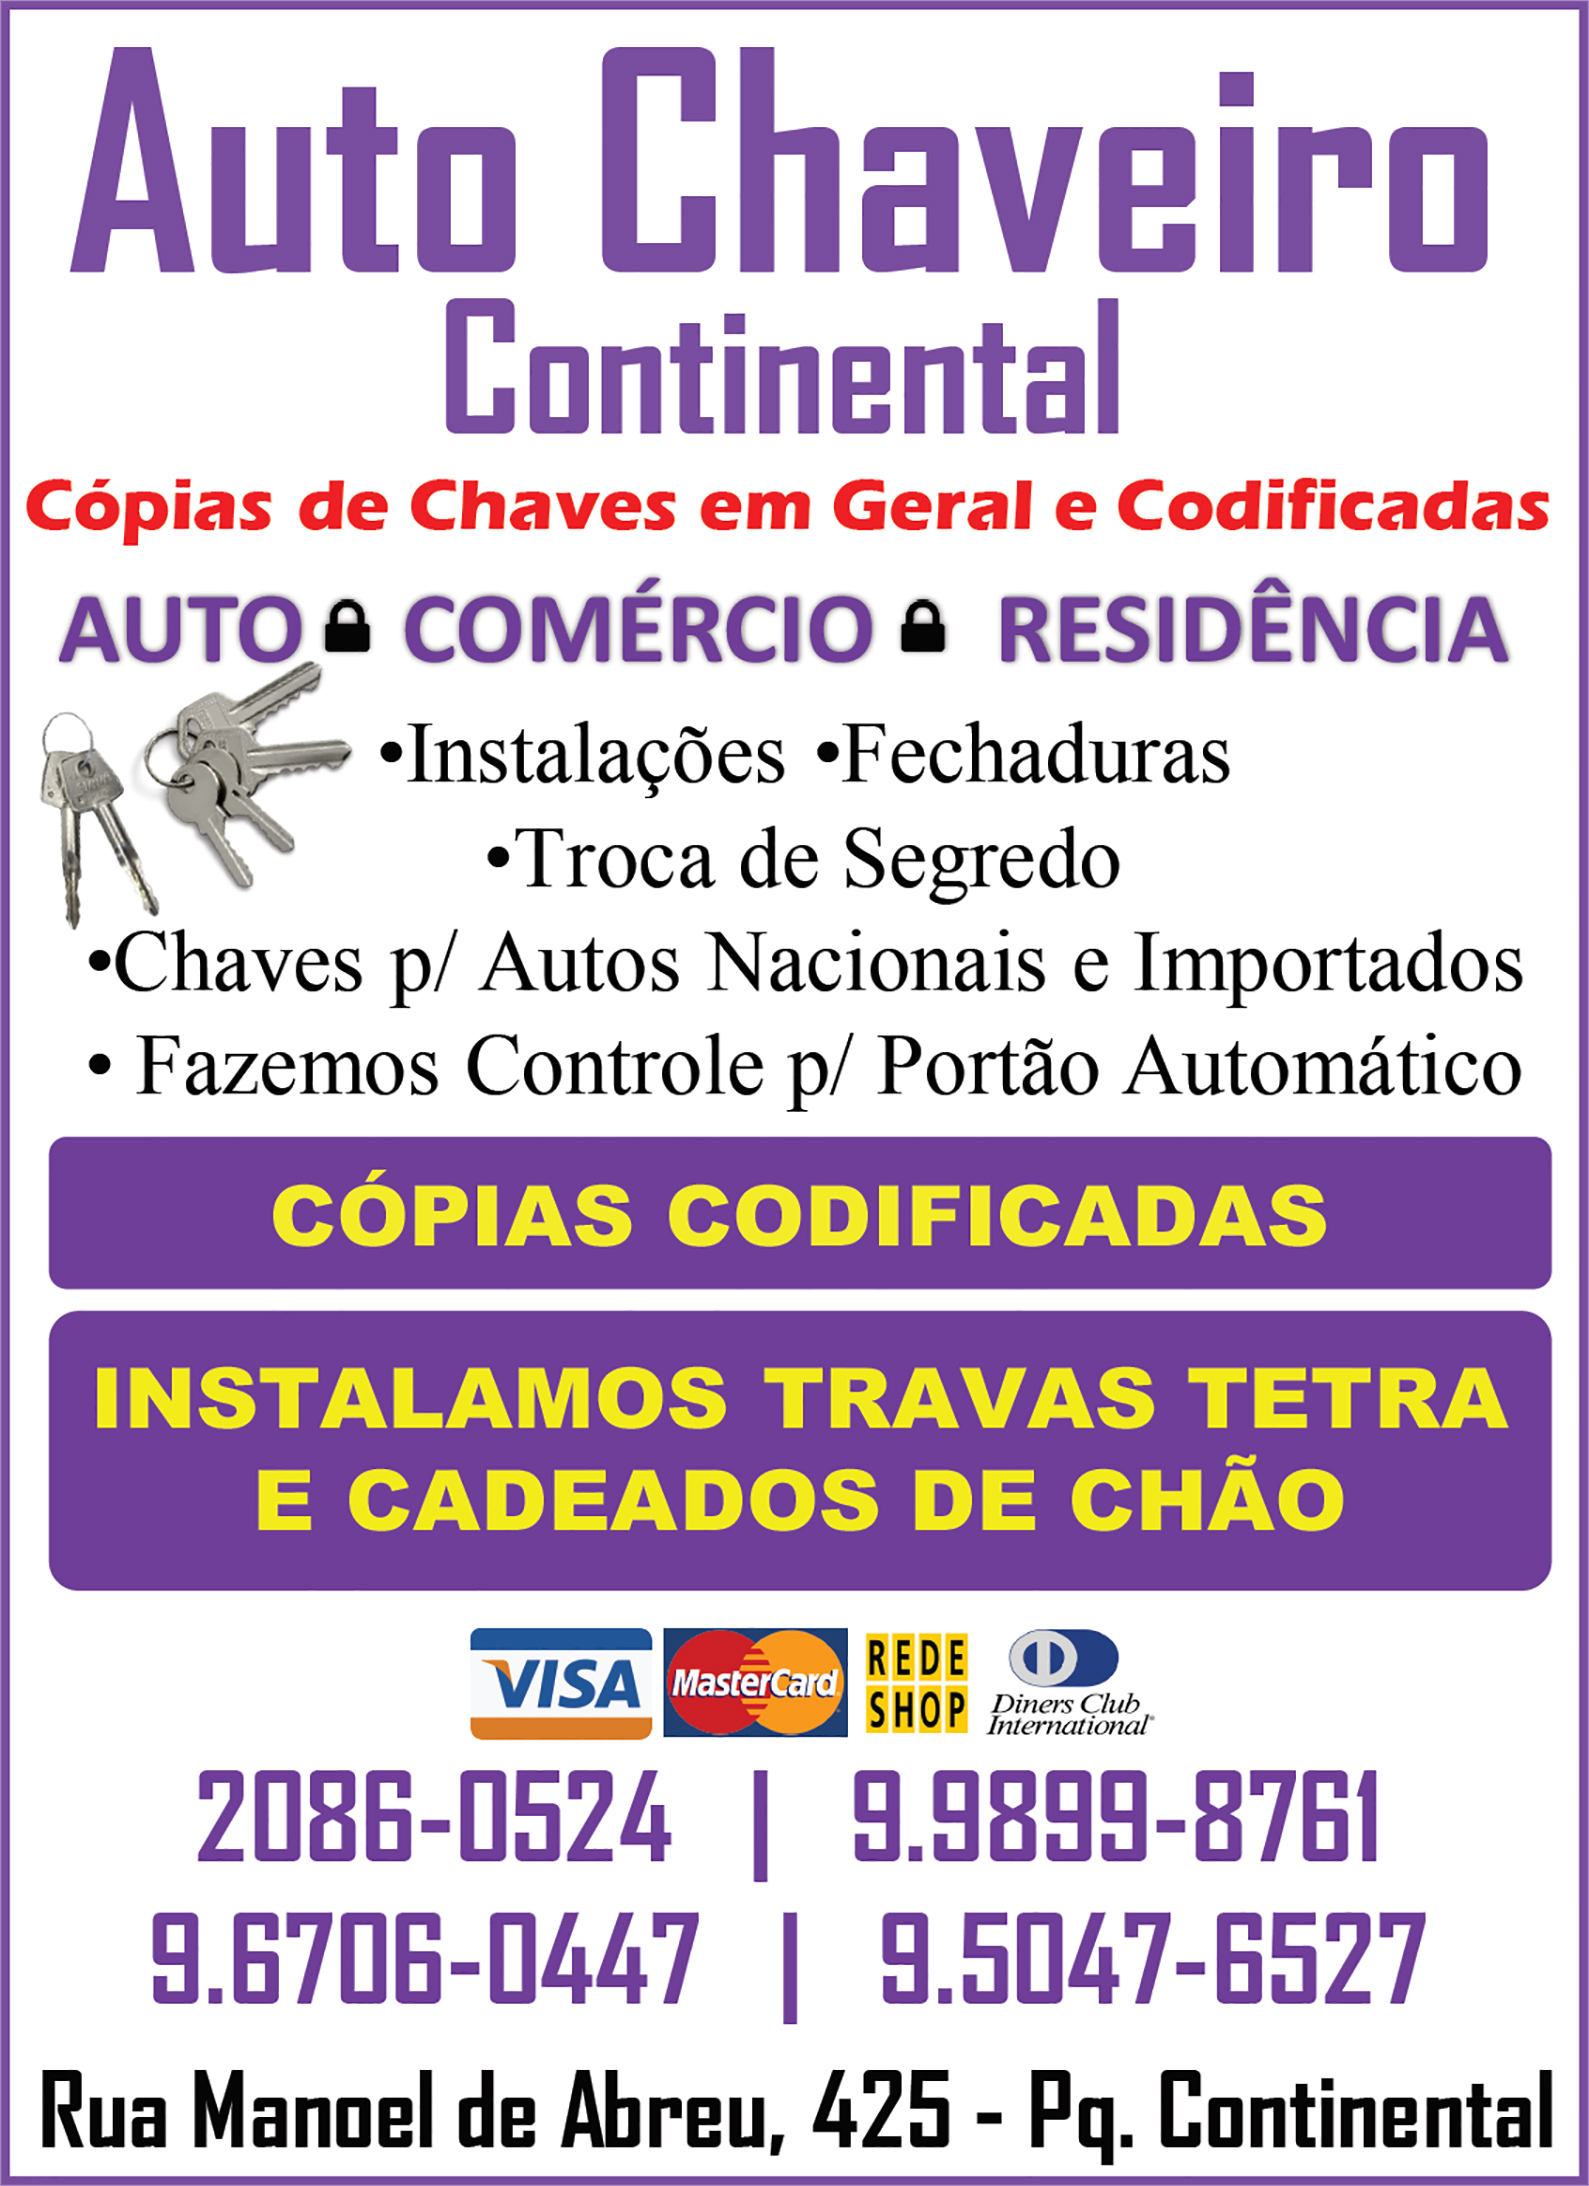 Auto Chaveiro Continental para autos e residencias em Guarulhos